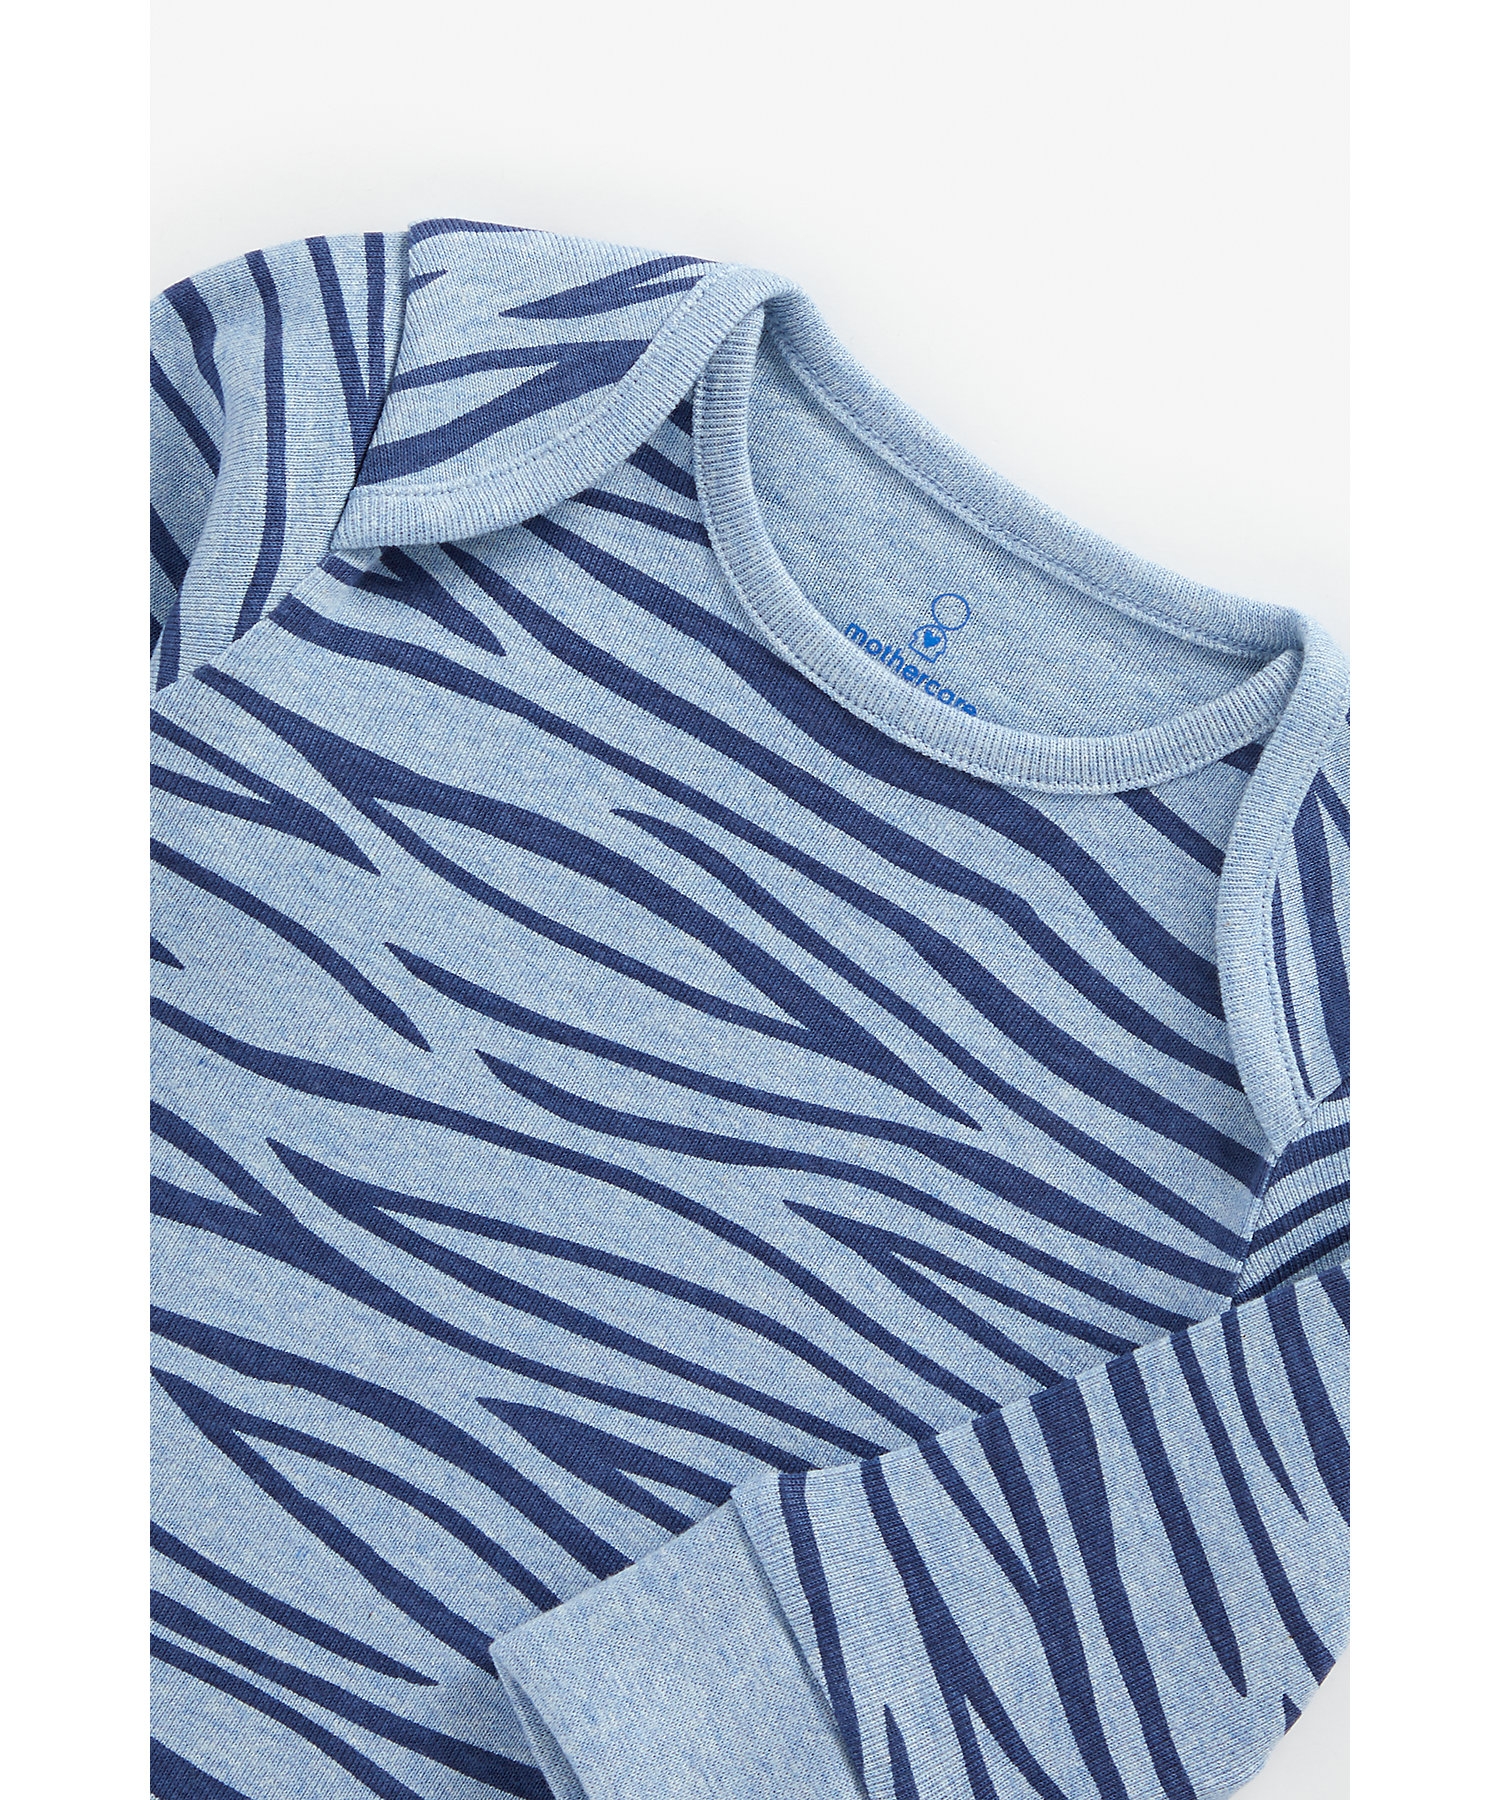 Boys Full Sleeves Pyjama Set Animal Print - Pack Of 2 - Blue